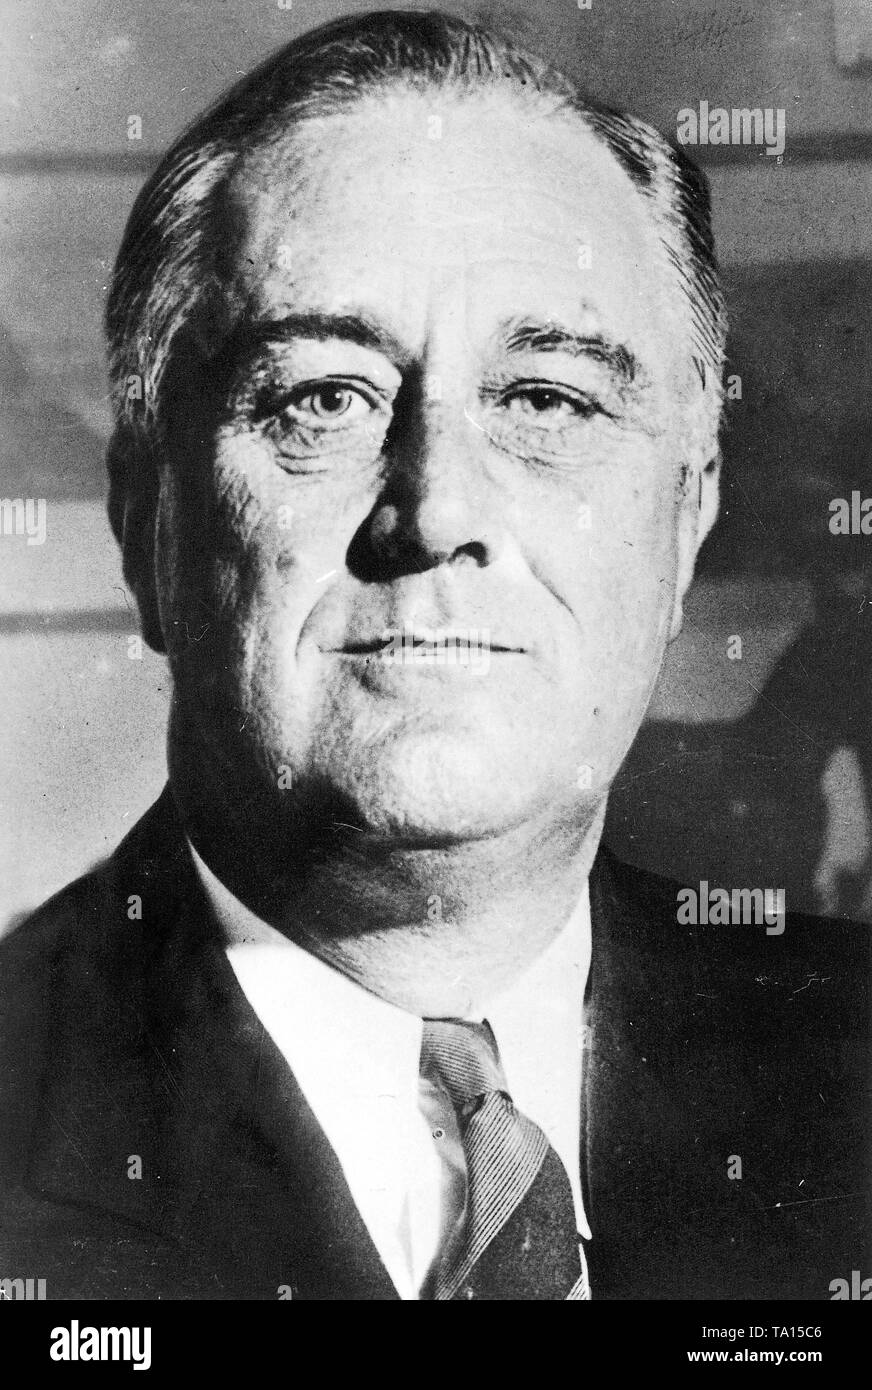 Franklin D. Roosevelt, der 32. Präsident der Vereinigten Staaten von Amerika und Mitbegründer der Vereinten Nationen. Stockfoto